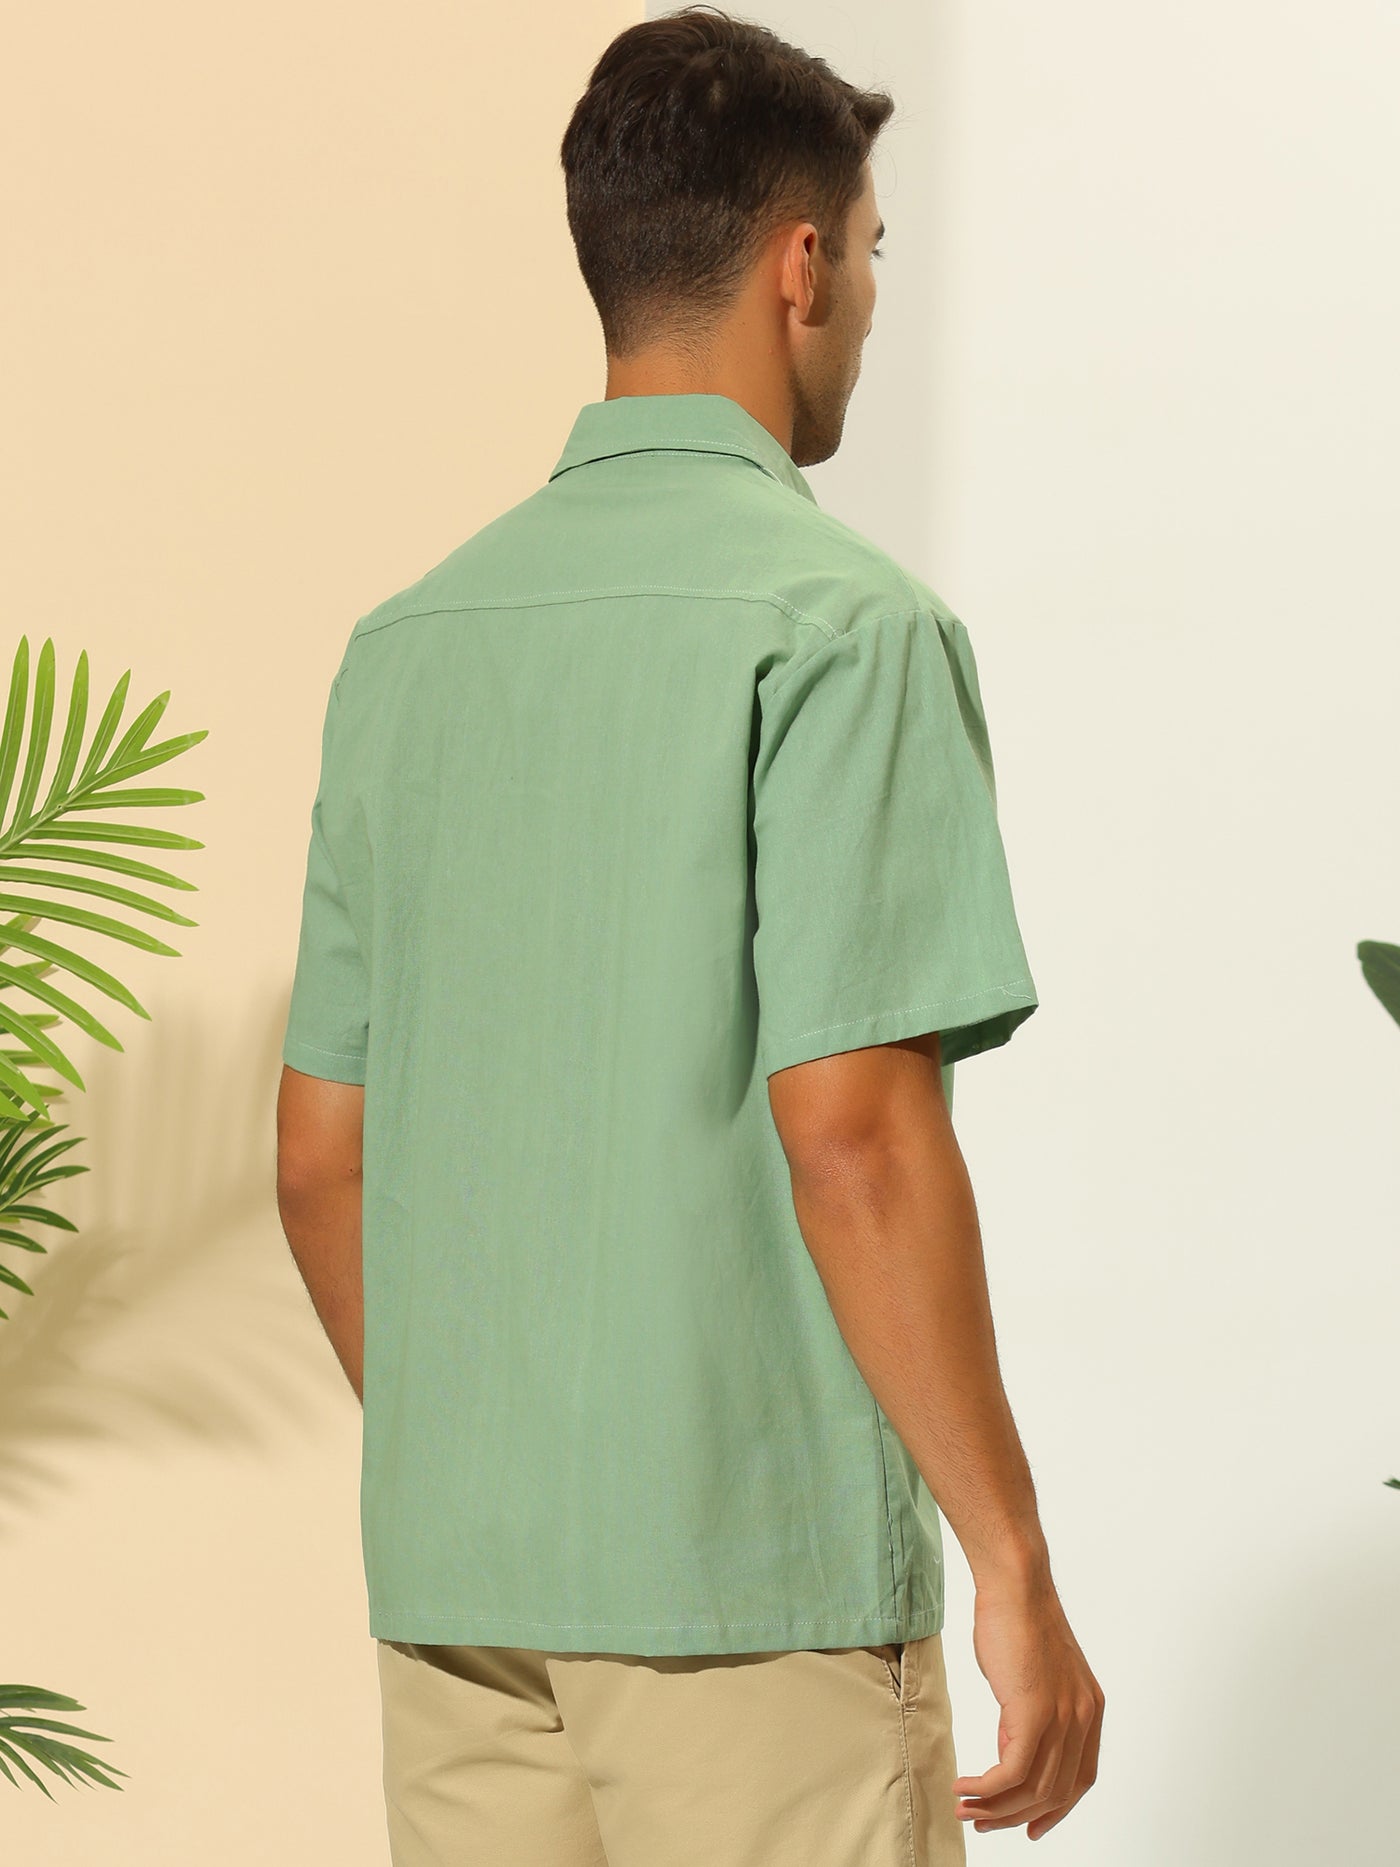 Bublédon Hawaiian Men's Linen Short Sleeve Casual Button Down Summer Shirts